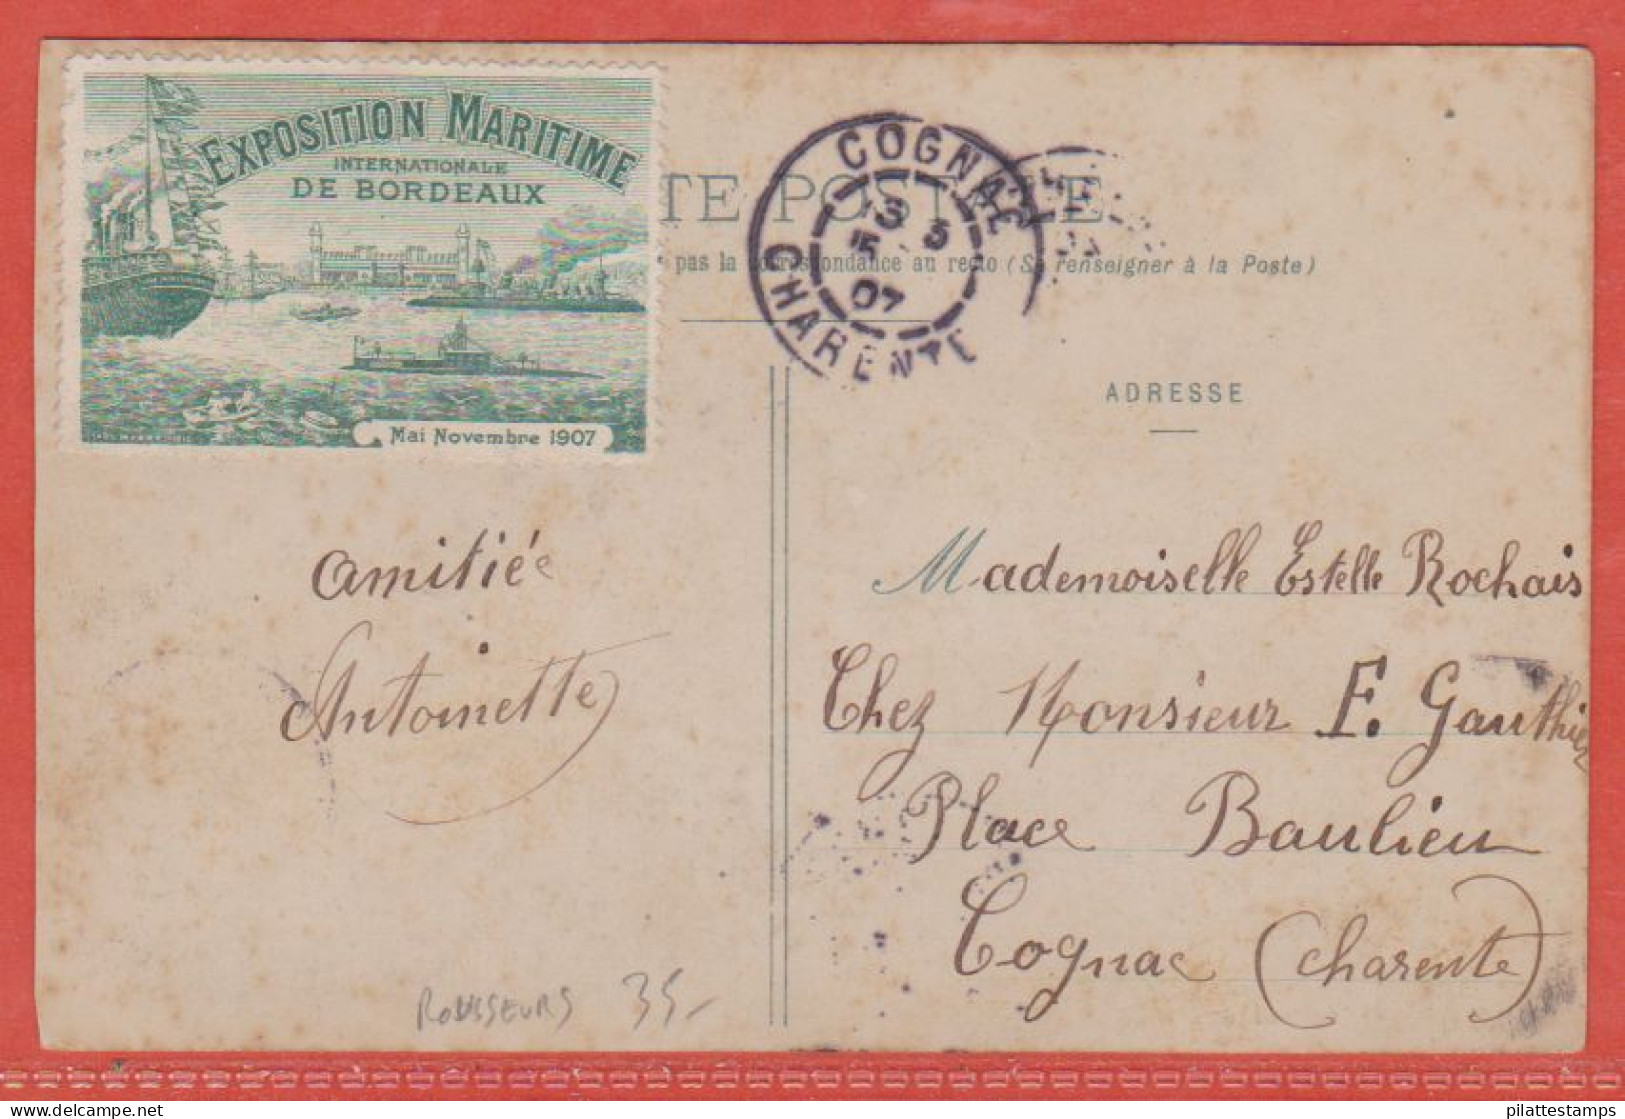 FRANCE VIGNETTE EXPO MARITIME SUR CARTE POSTALE DE 1907 DE BORDEAUX (ROUSSEURS) - Esposizioni Filateliche